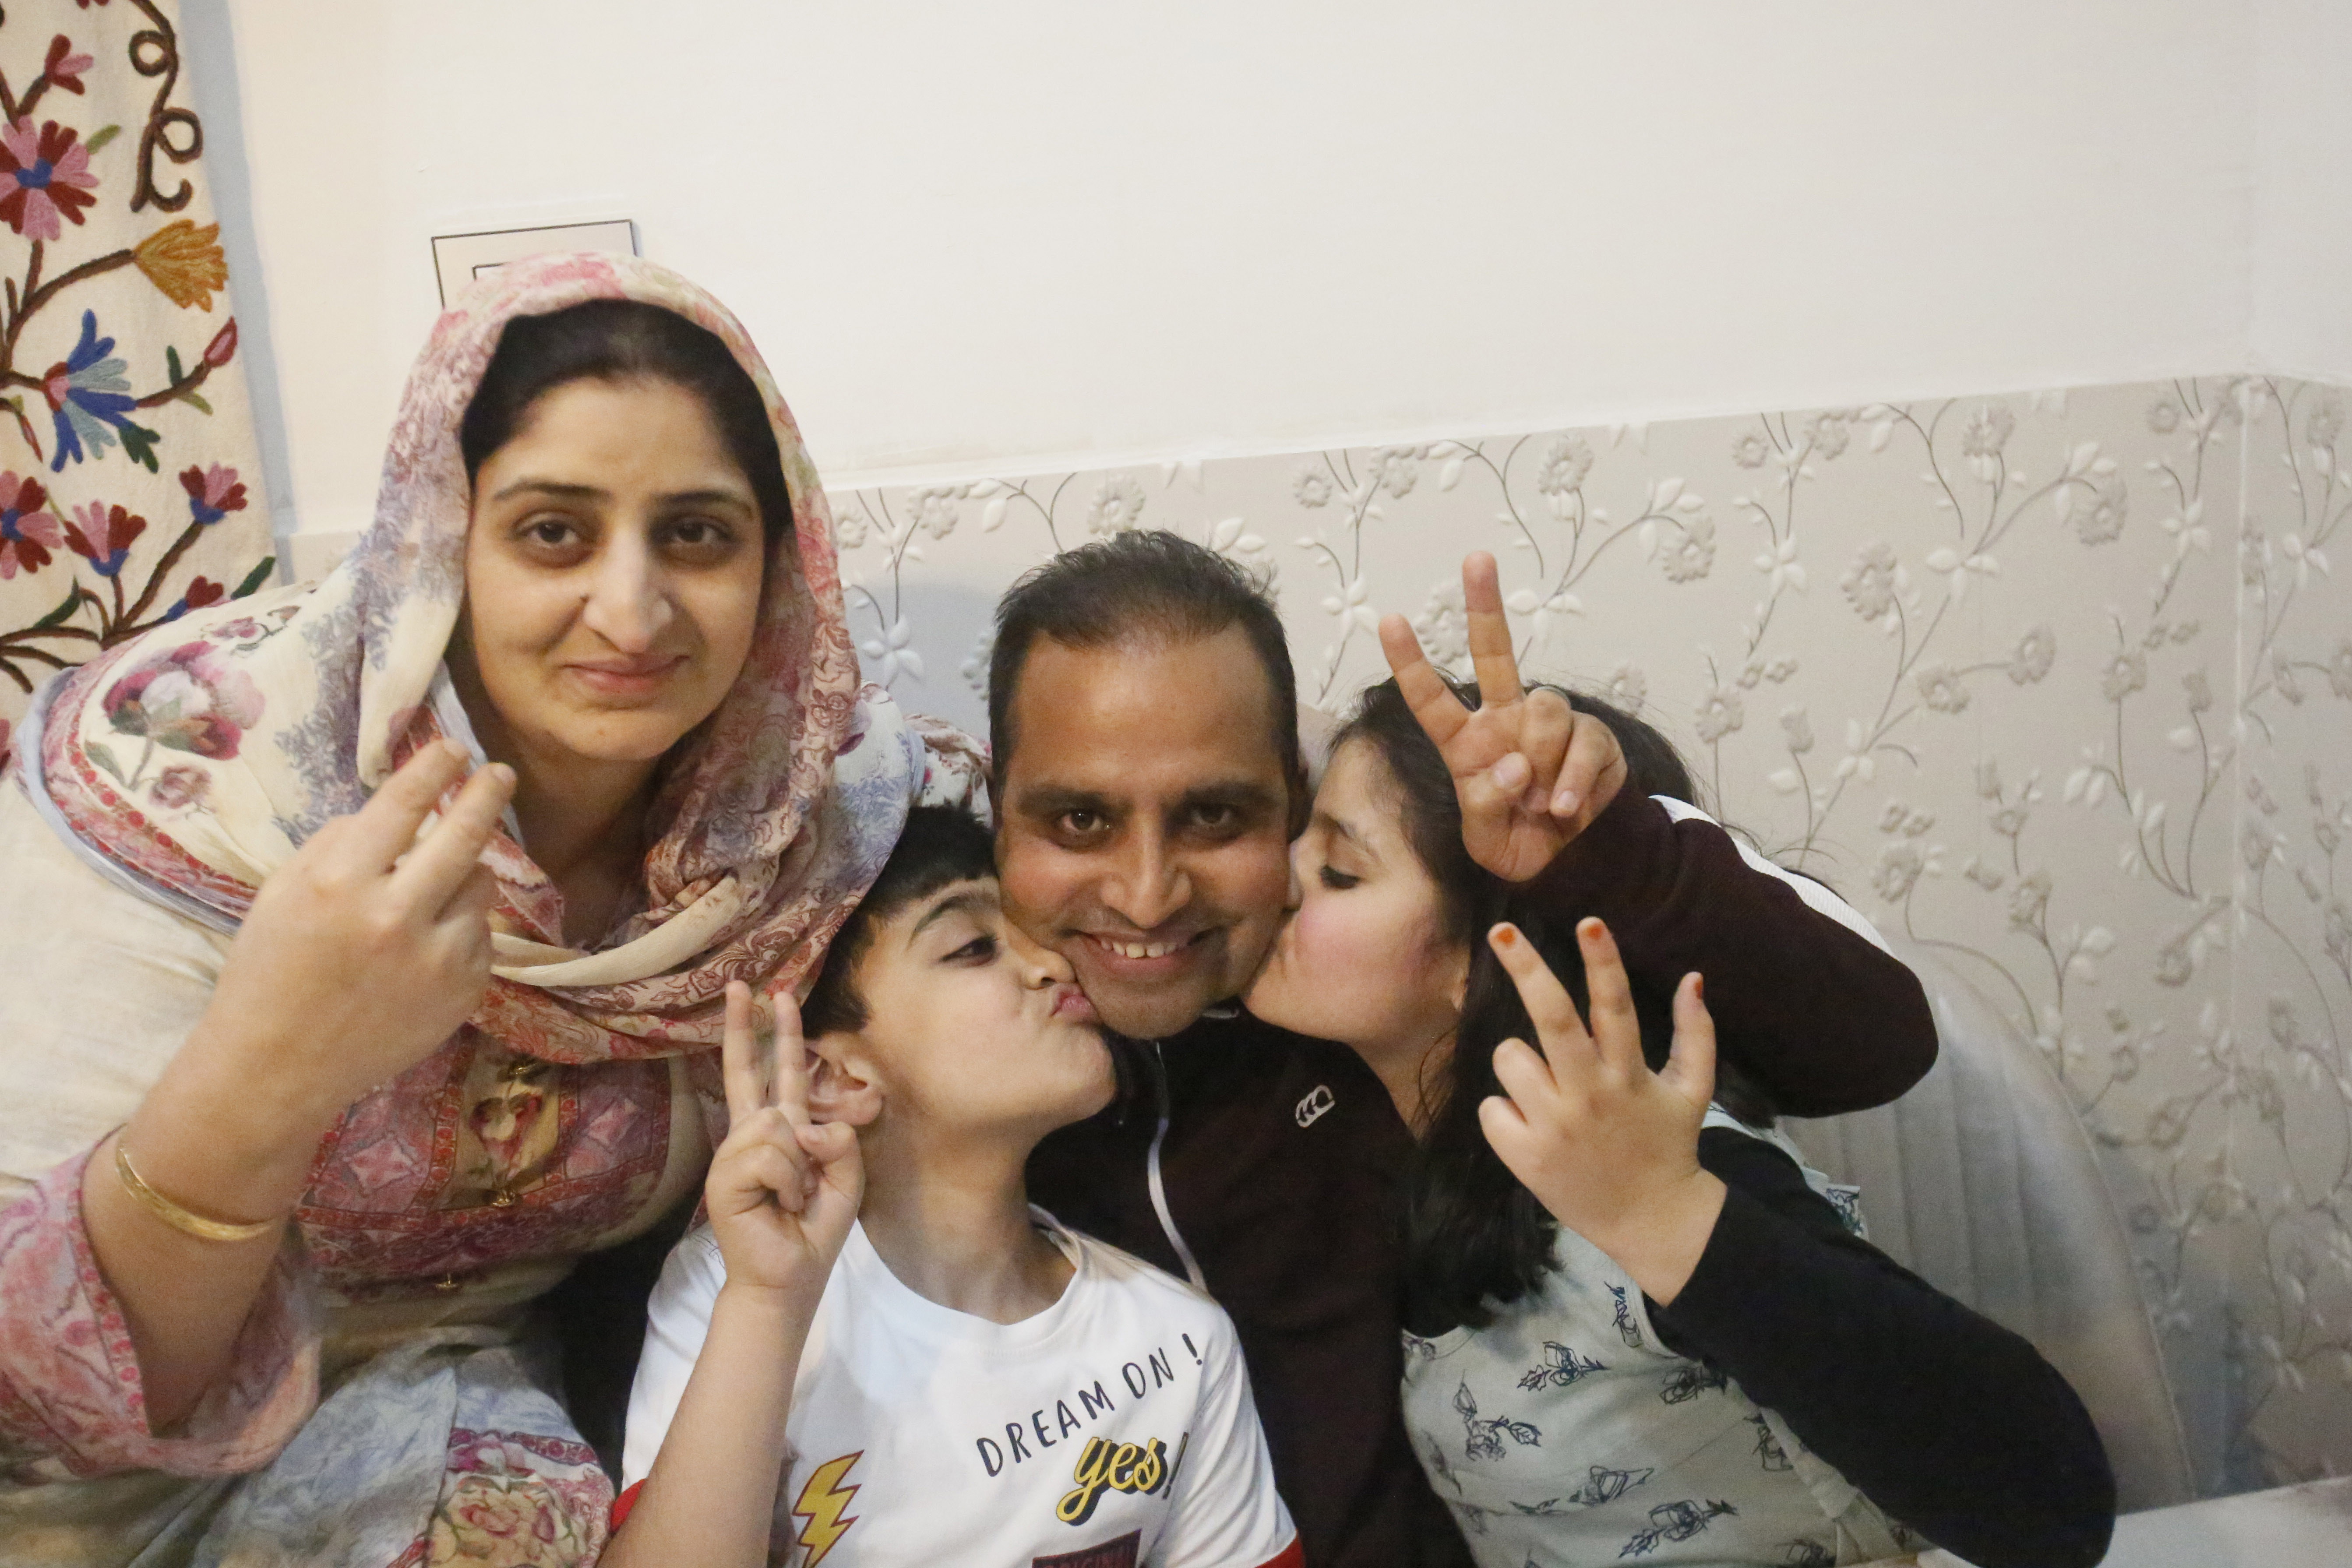 El fotógrafo de Associated Press, Mukhtar Khan, celebra con su familia en su casa en Srinagar, Cachemira controlada por la India, el martes 5 de mayo de 2020, luego del anuncio de que fue uno de los tres fotógrafos de AP que ganaron el Premio Pulitzer en Fotografía de Característica por su cobertura del conflicto en Cachemira y en Jammu, India. (Foto AP / Afnan Arif)